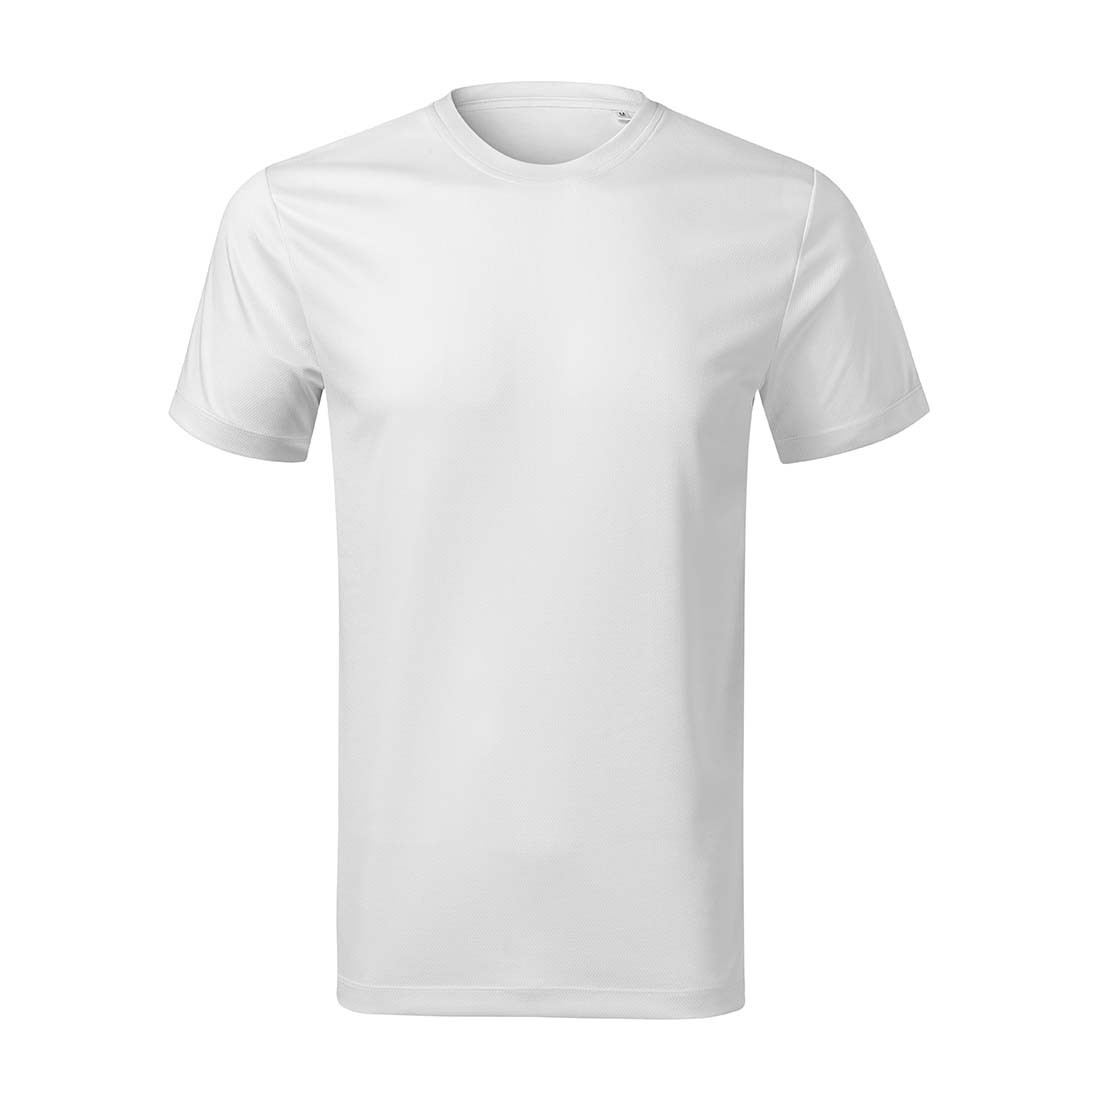 Tee-shirt pour hommes - Les vêtements de protection